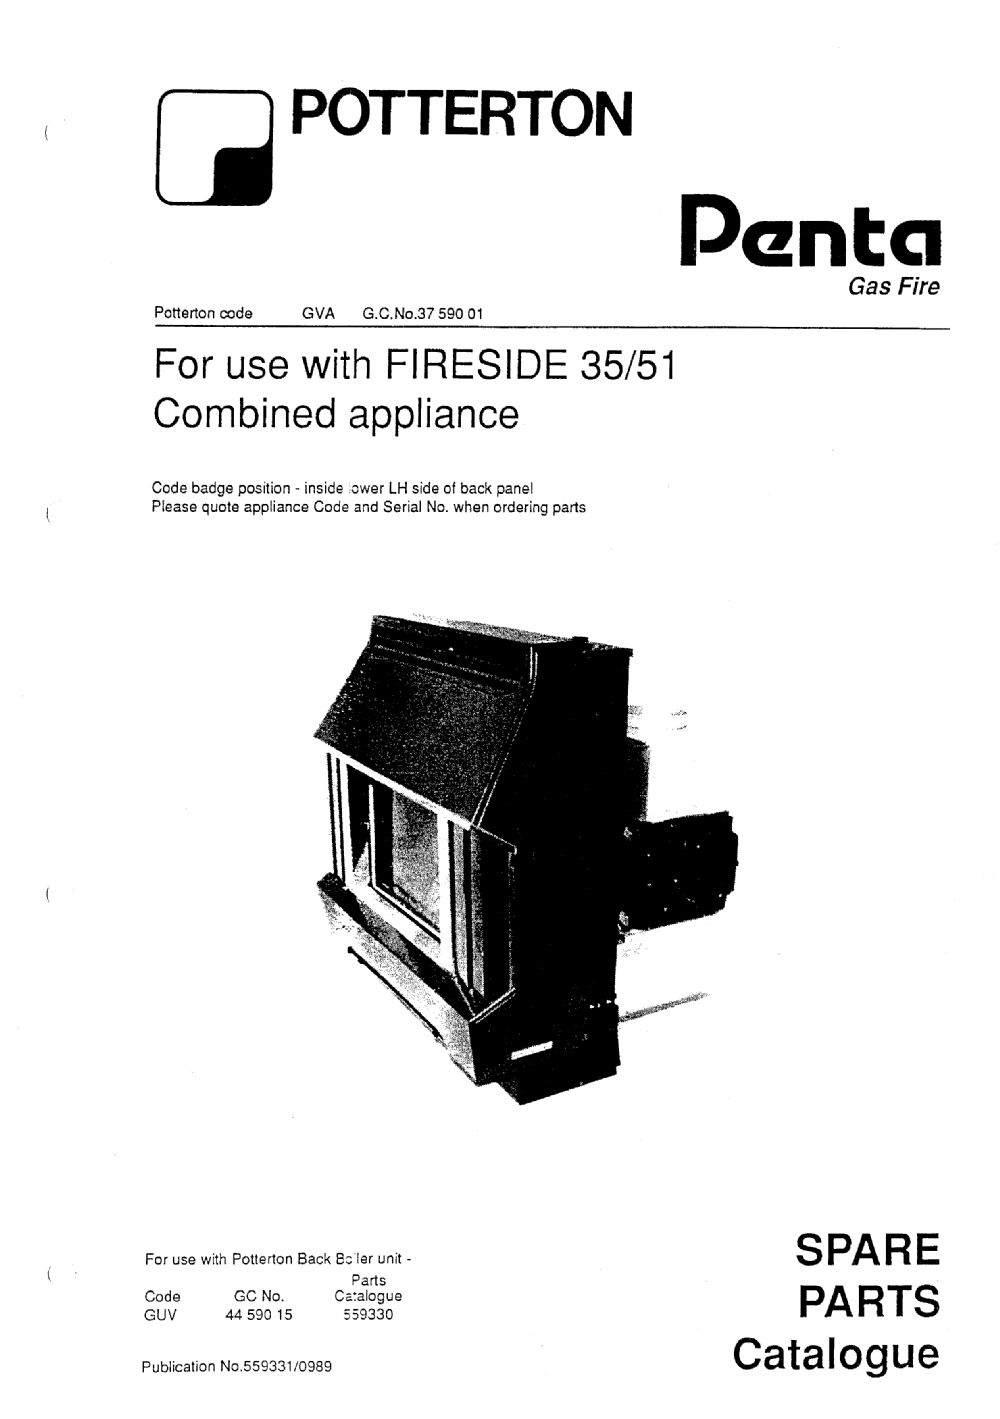 Firesize 35/51 Penta Fire - appliance_4264